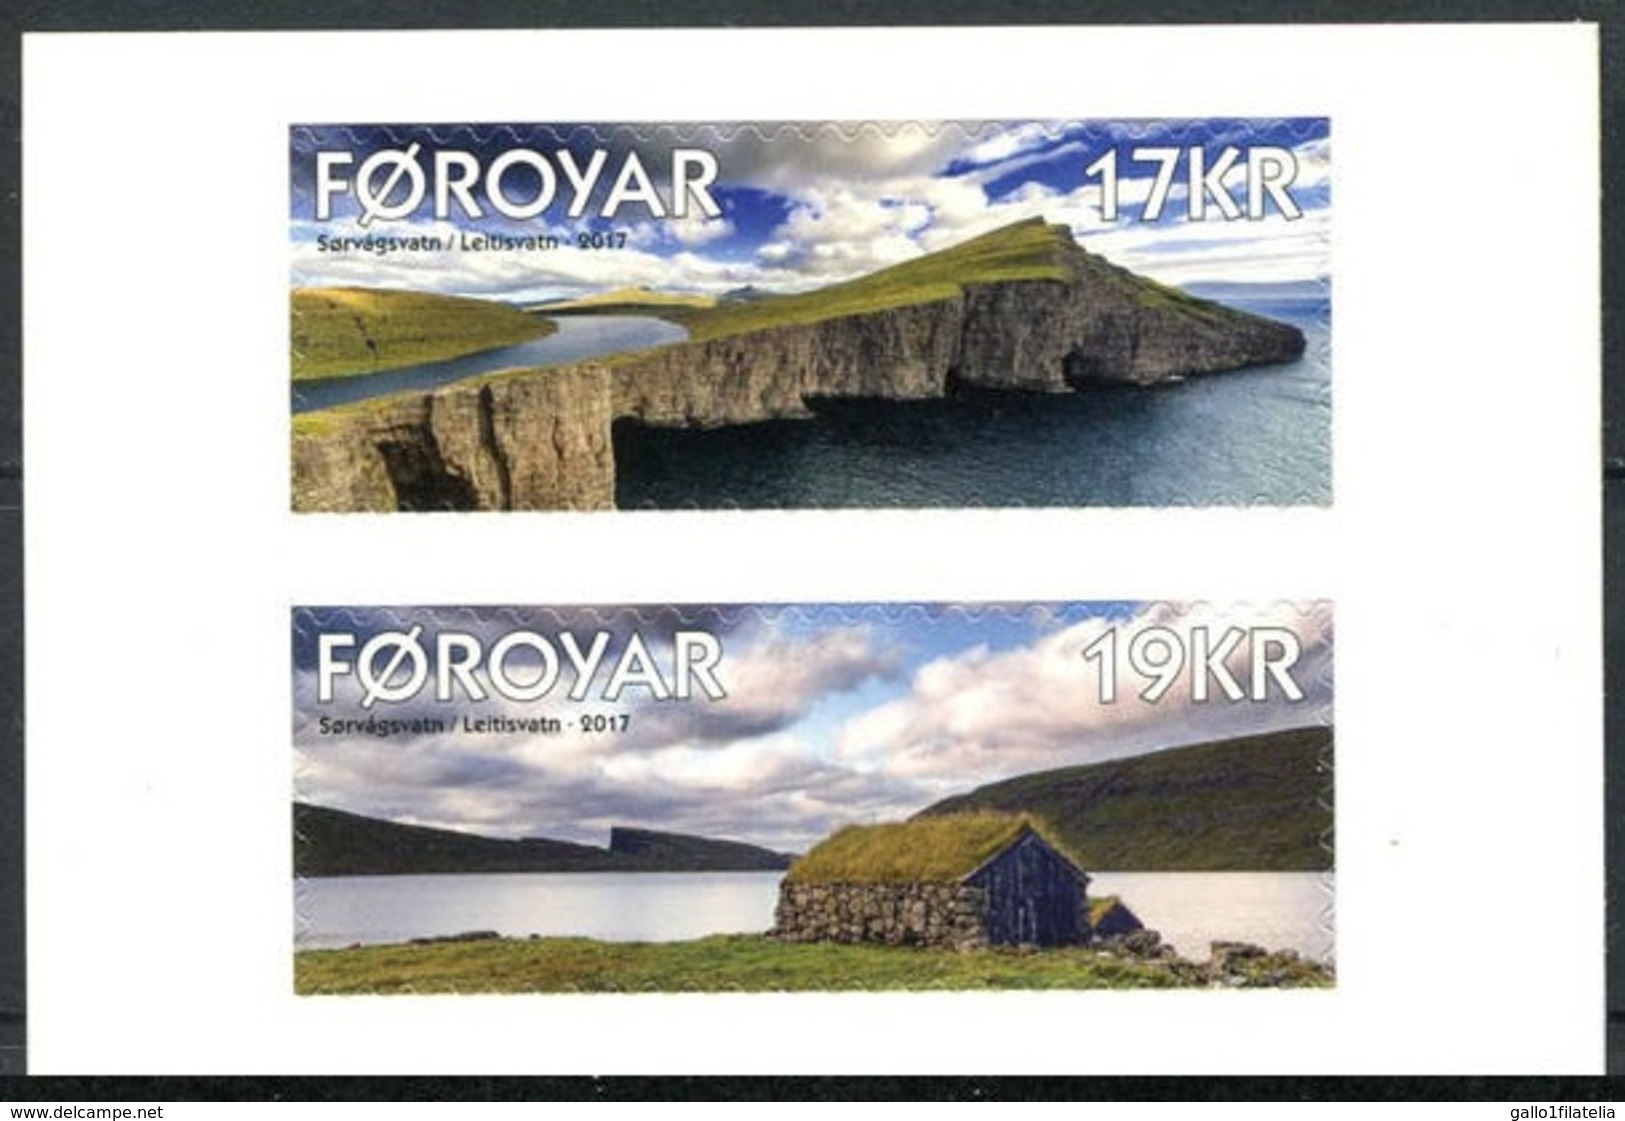 2017 - Fær Øer / FAROER - PAESAGGIO / LANDSCAPE - SET ADESIVO DA LIBRETTO / ADHESIVE SET FROM BOOKLET. MNH. - Faroe Islands